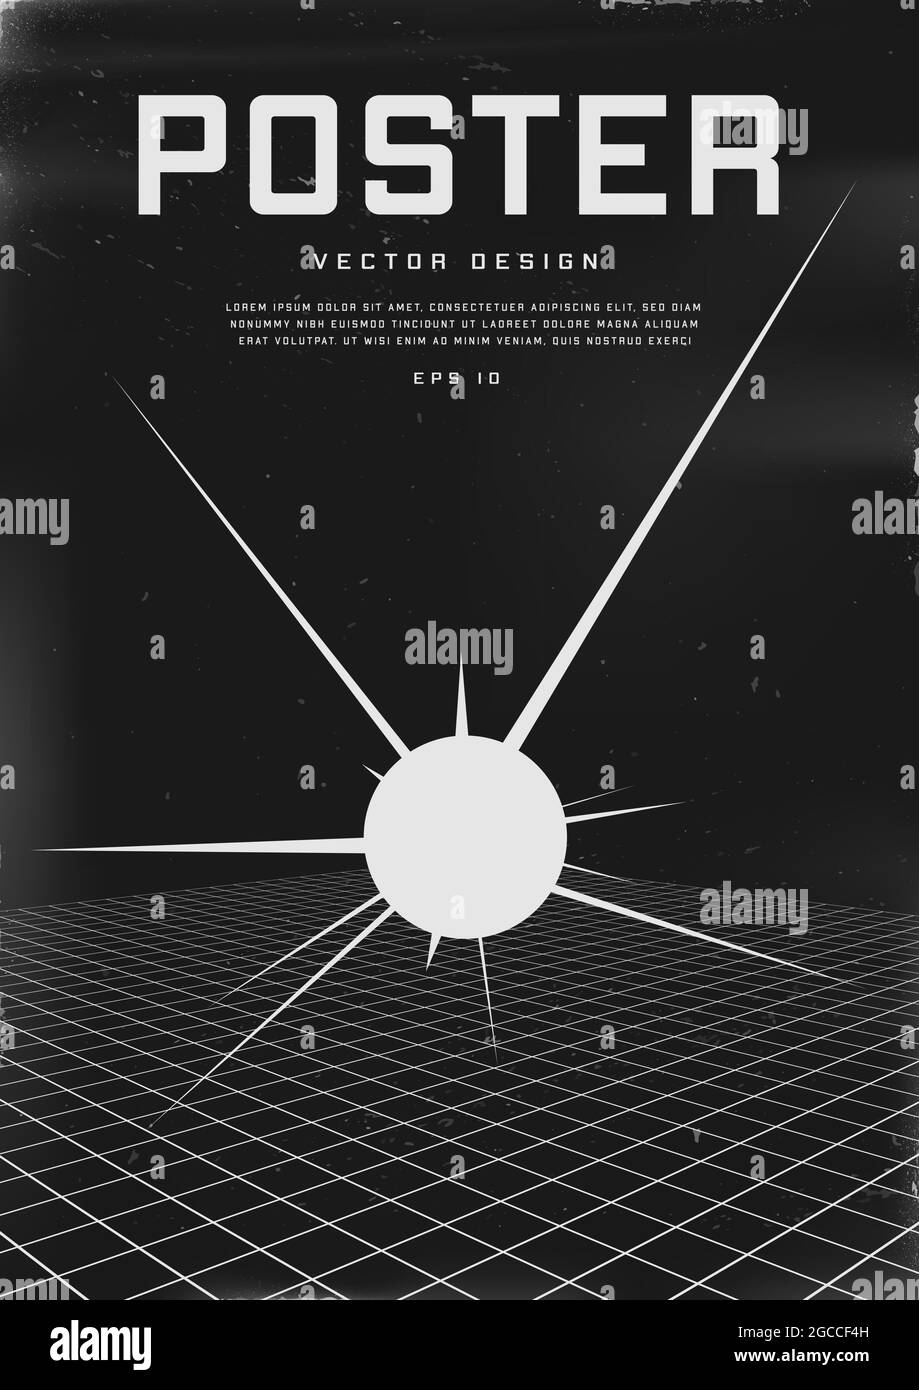 Poster dal design retrovuturistico. Poster in stile cyberpunk degli anni '80 con griglia di prospettiva e sfera esplosiva. Modello shabby graffiato flyer per il tuo design Illustrazione Vettoriale